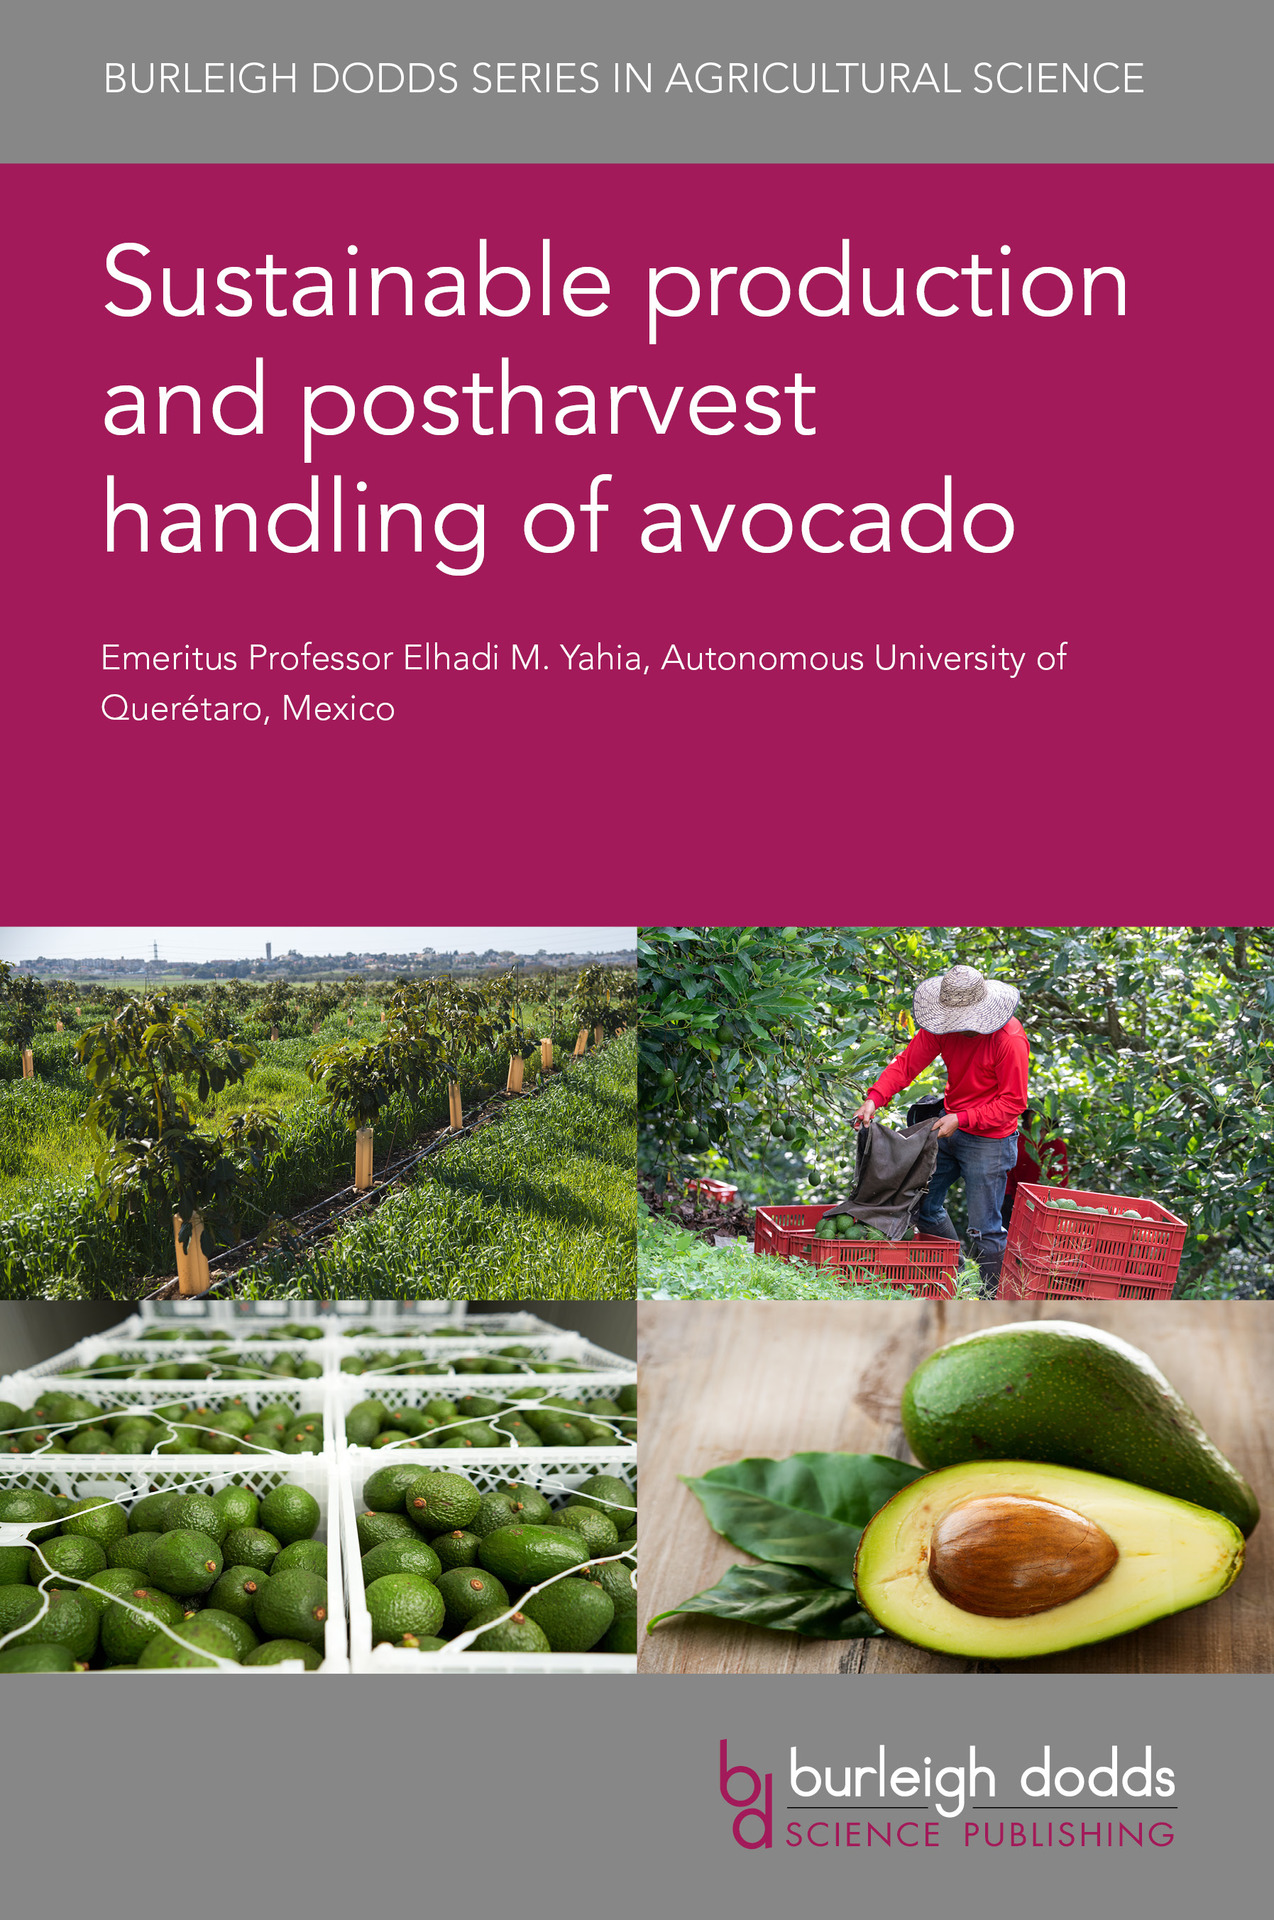 book cover, four images, avocado plantation, farmer harvesting avocados, avocados packaged, fresh avocado halved